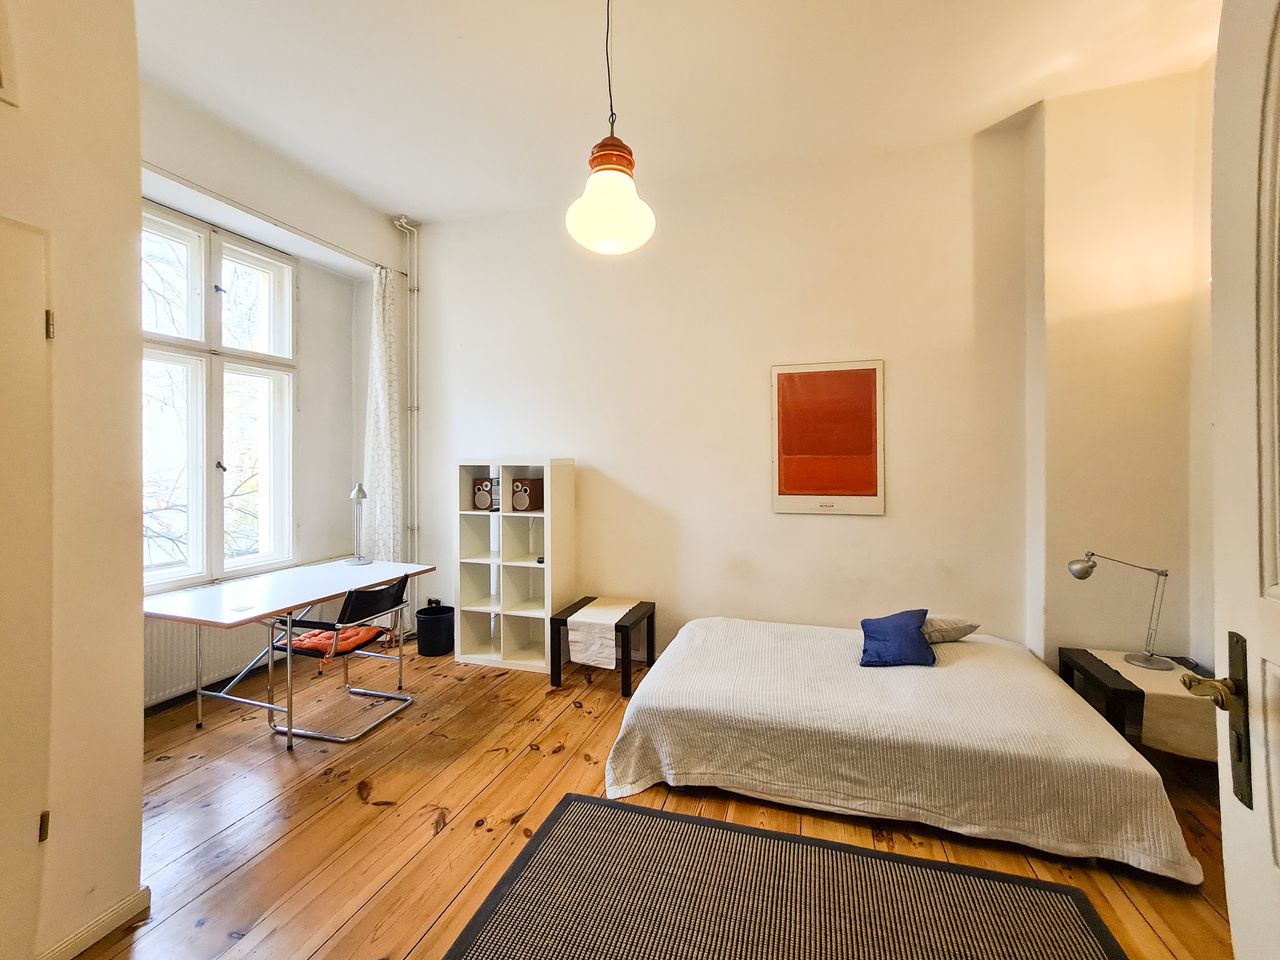 Fashionable apartment in Schöneberg